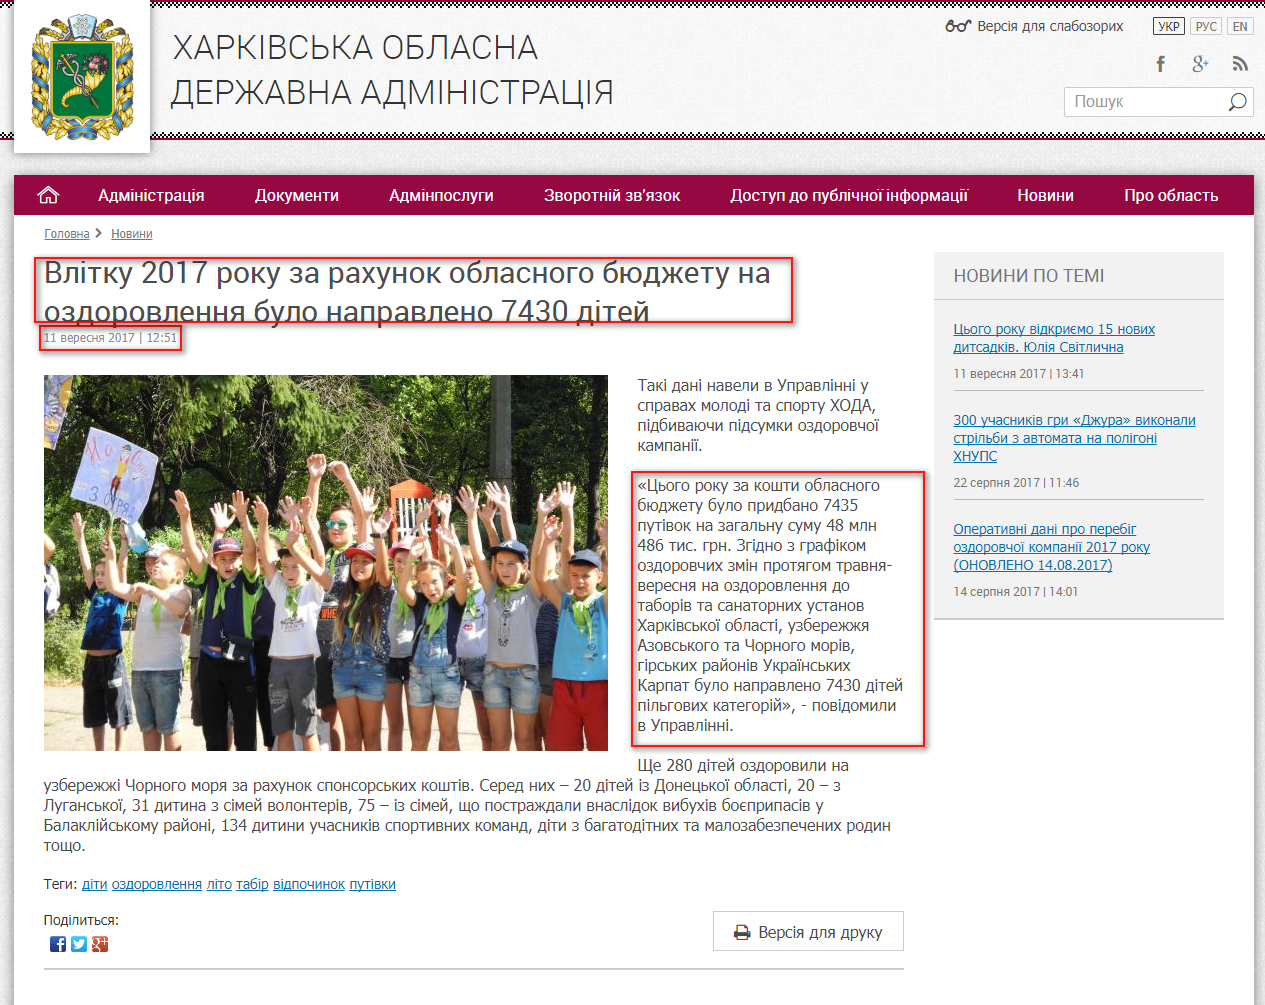 http://kharkivoda.gov.ua/news/88414